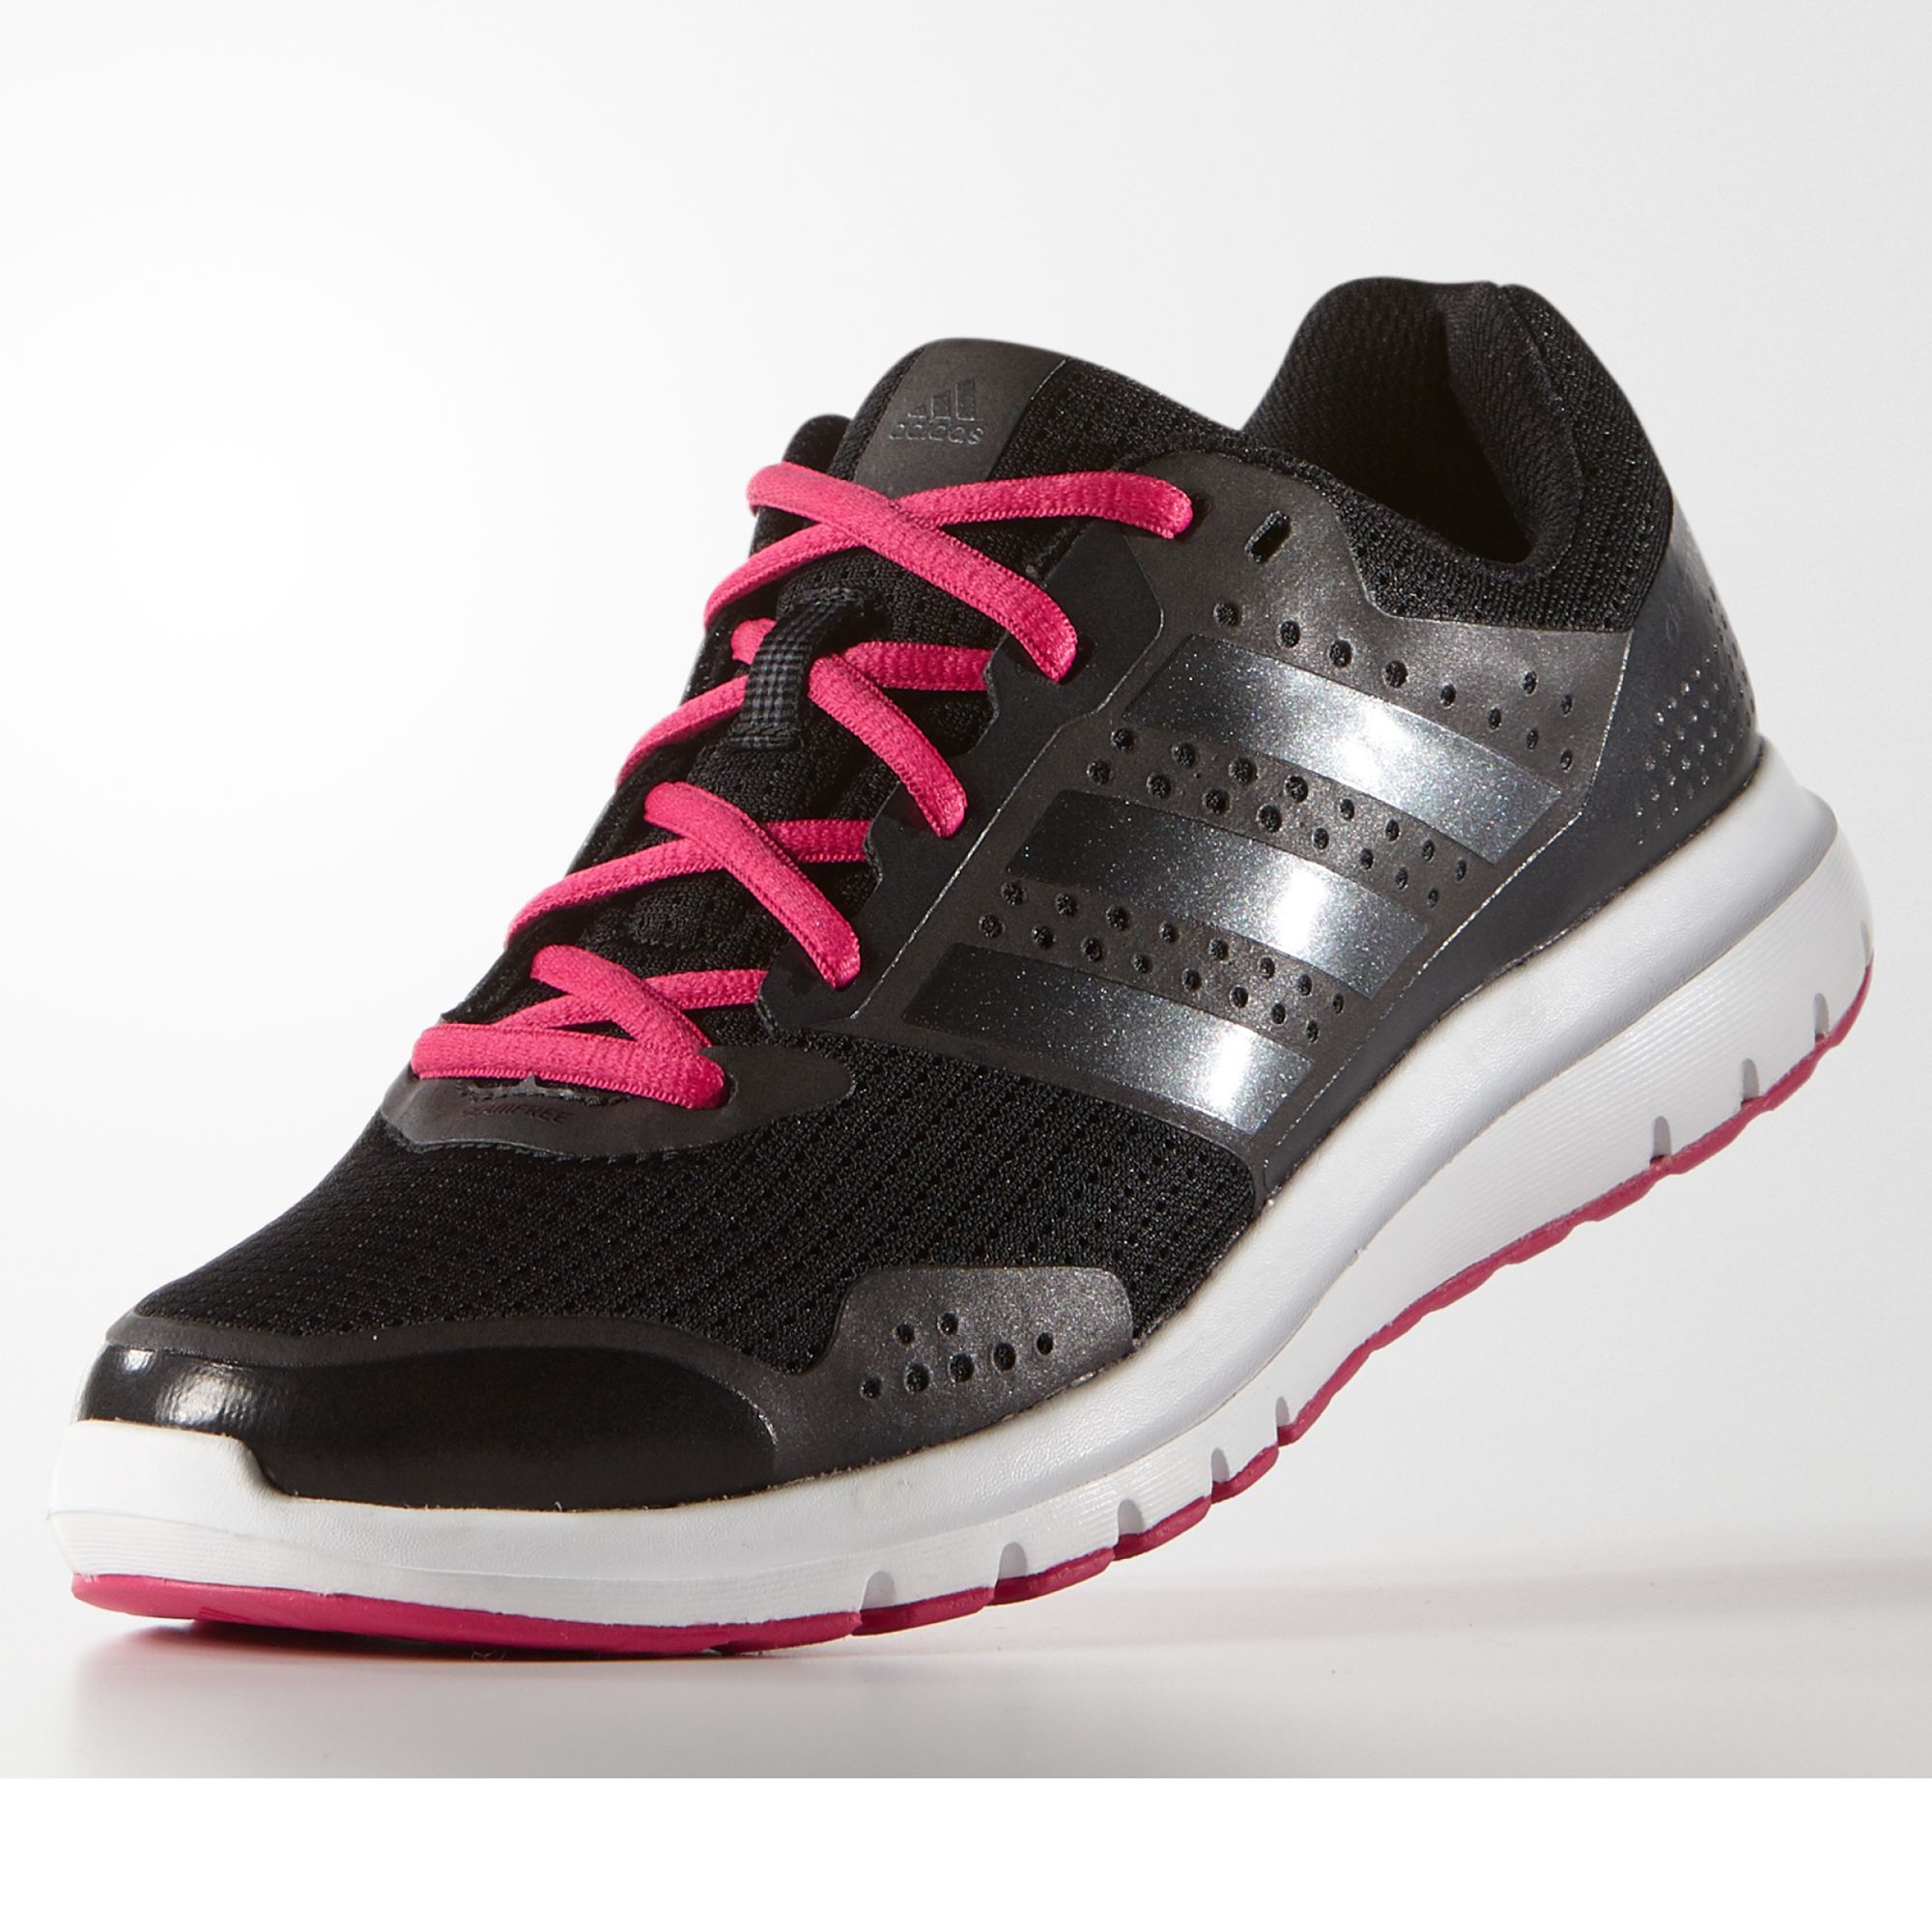 adidas duramo 7 women's running shoes